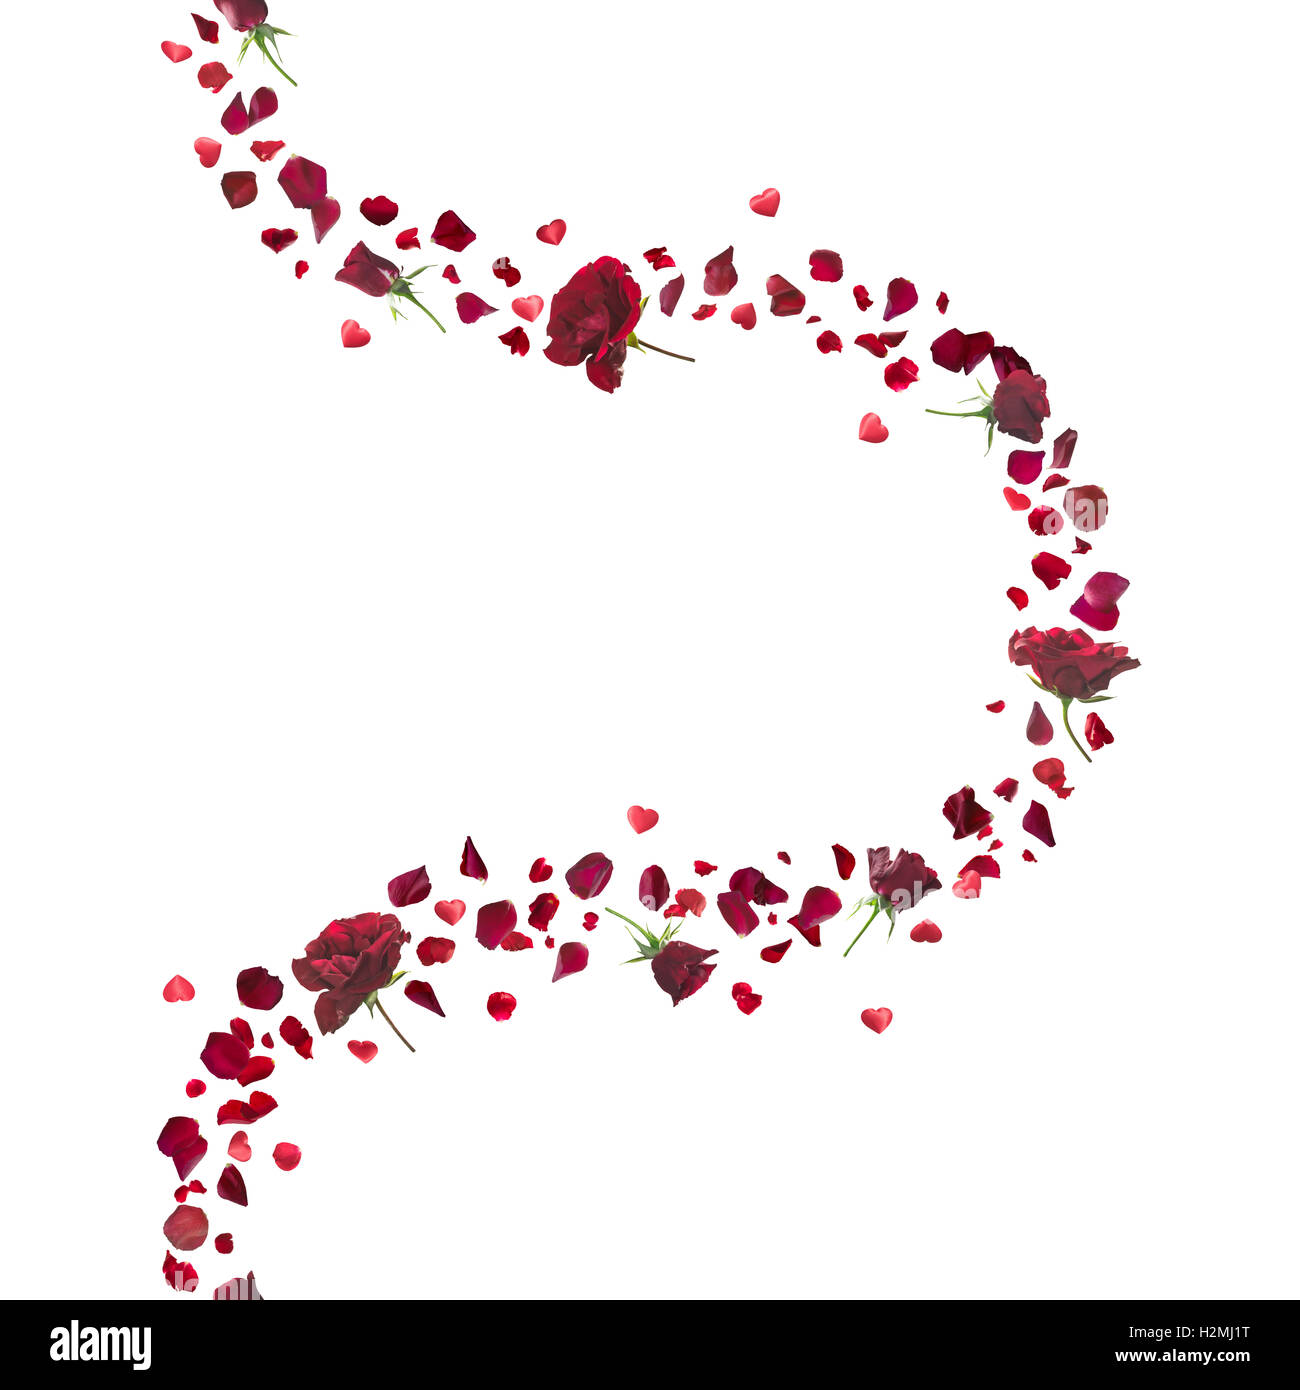 Wiederholbare rote Rosen und Blütenblätter Kurve mit schwebenden Herzen, Studio in Schärfentiefe fotografiert und isoliert auf weiss. Stockfoto